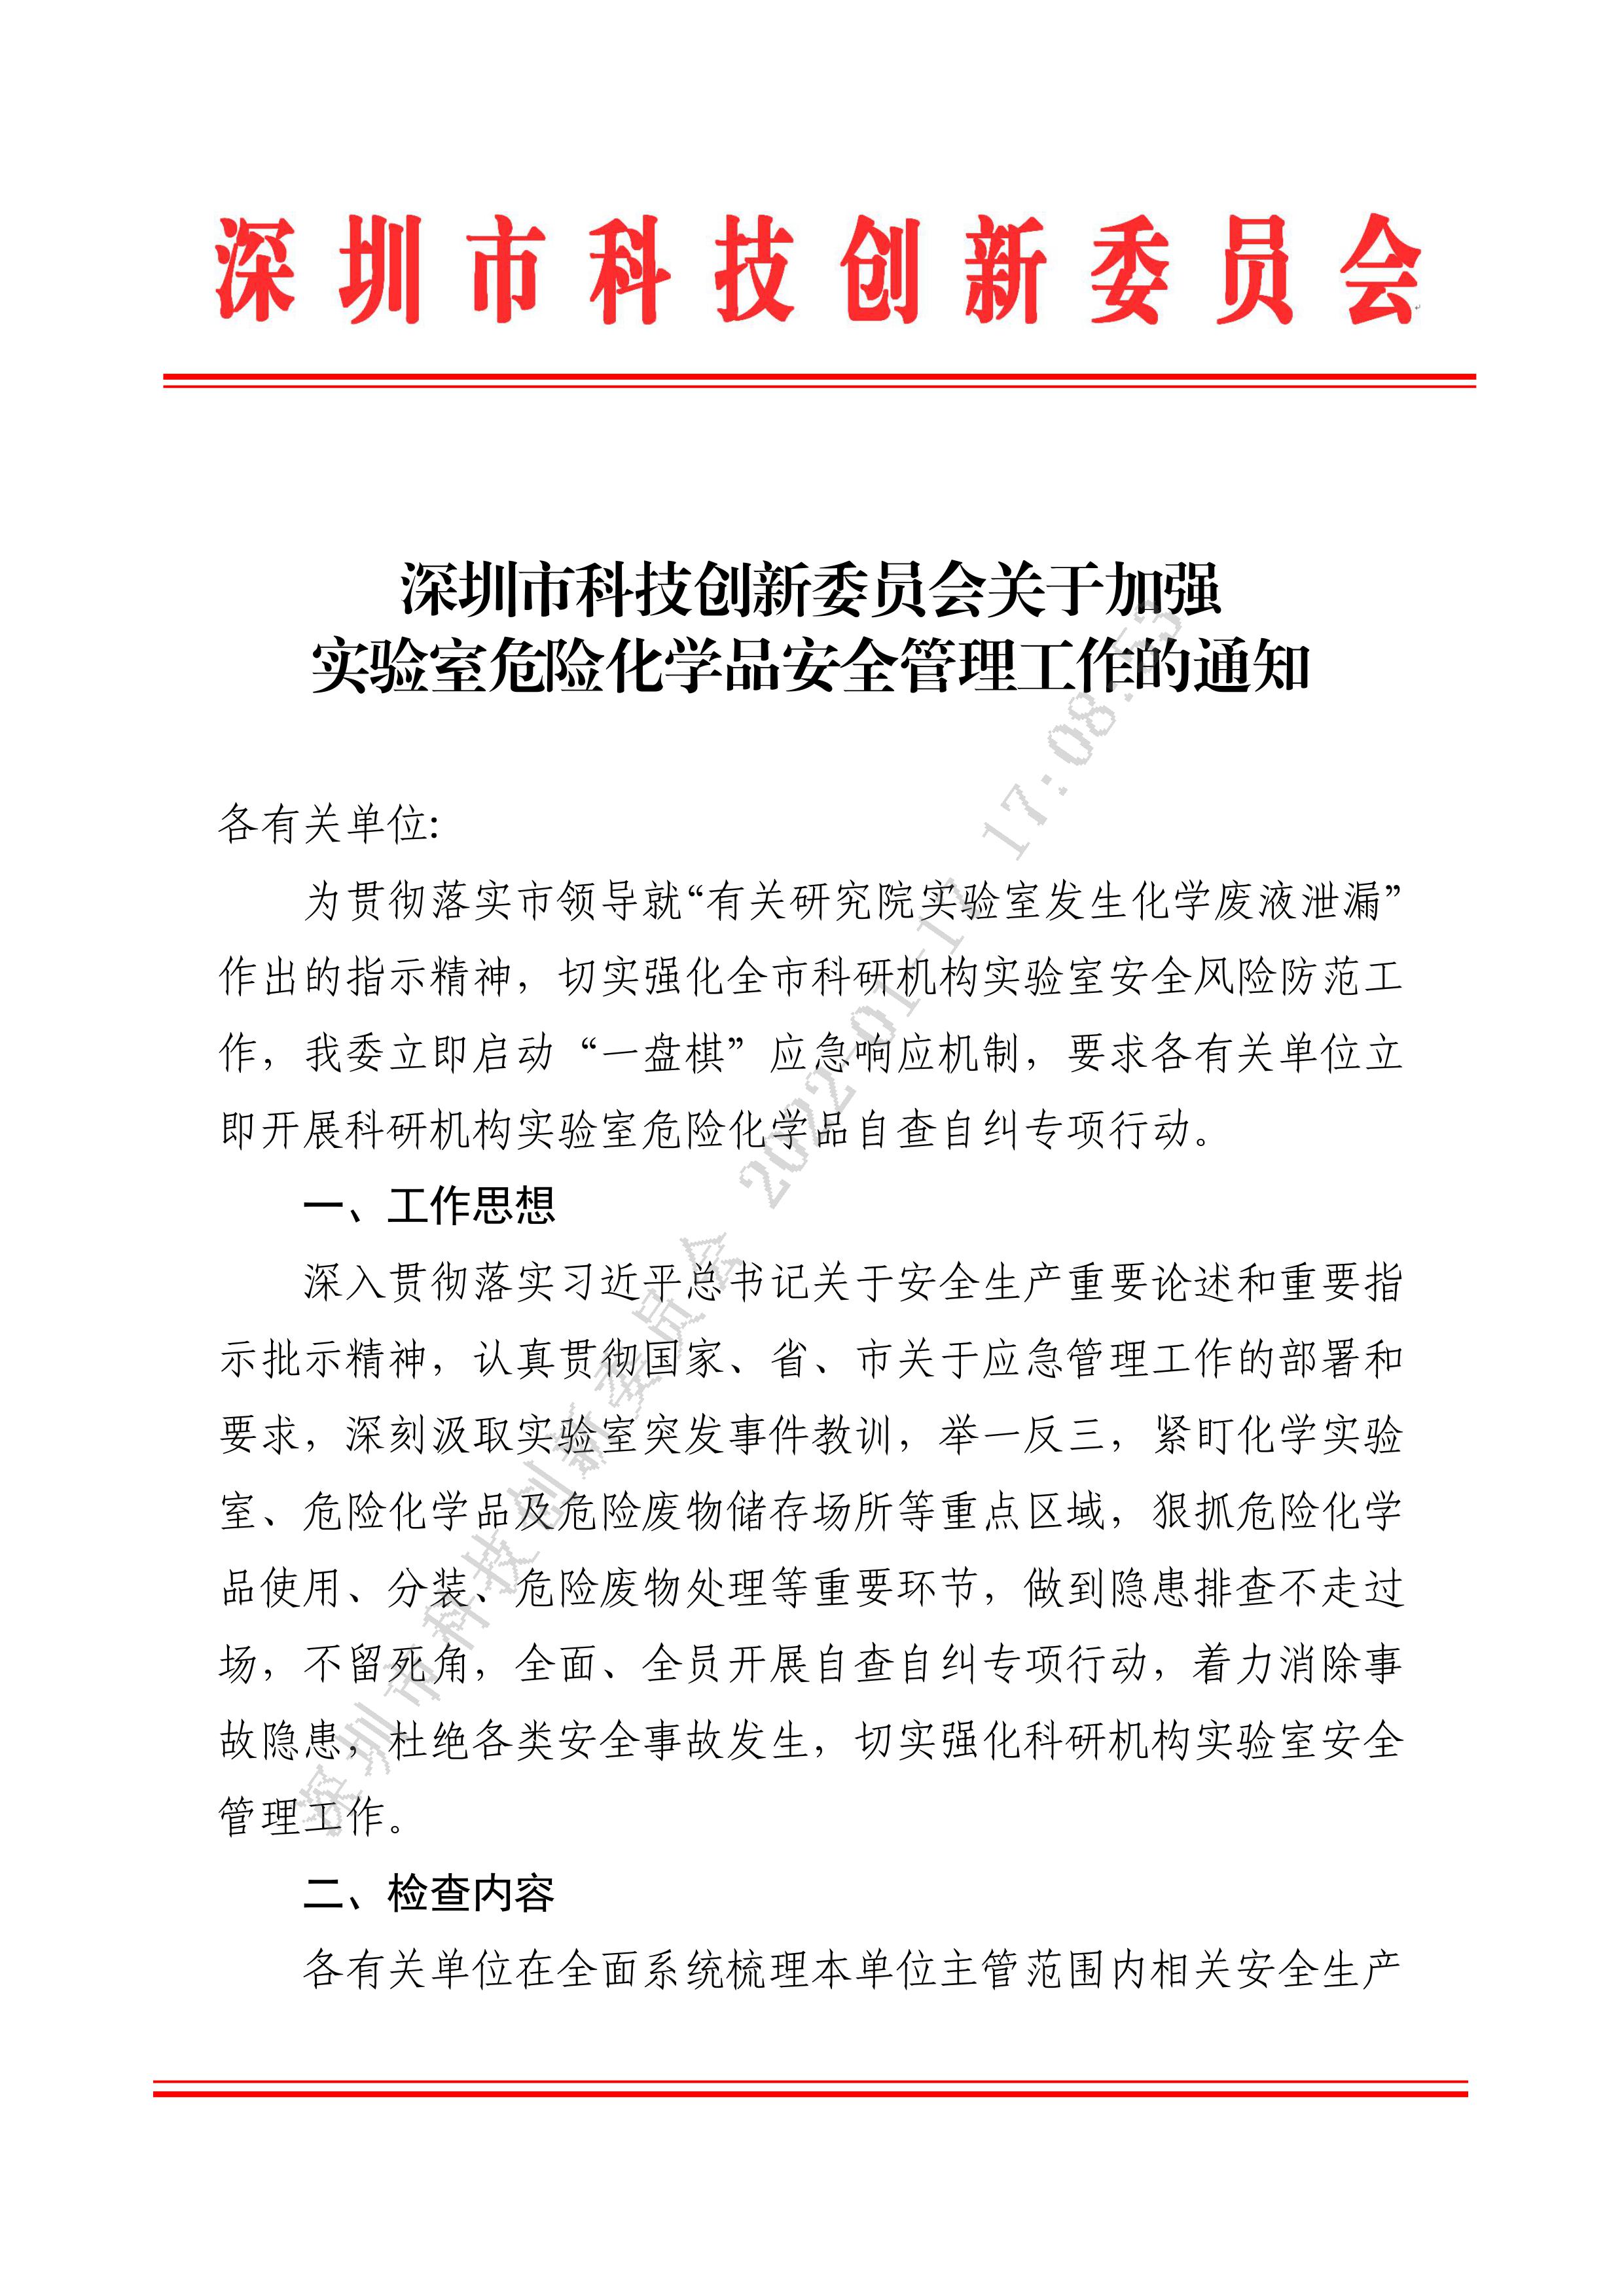 深圳市科技创新委员会关于加强实验室危险化学品安全管理工作的通知